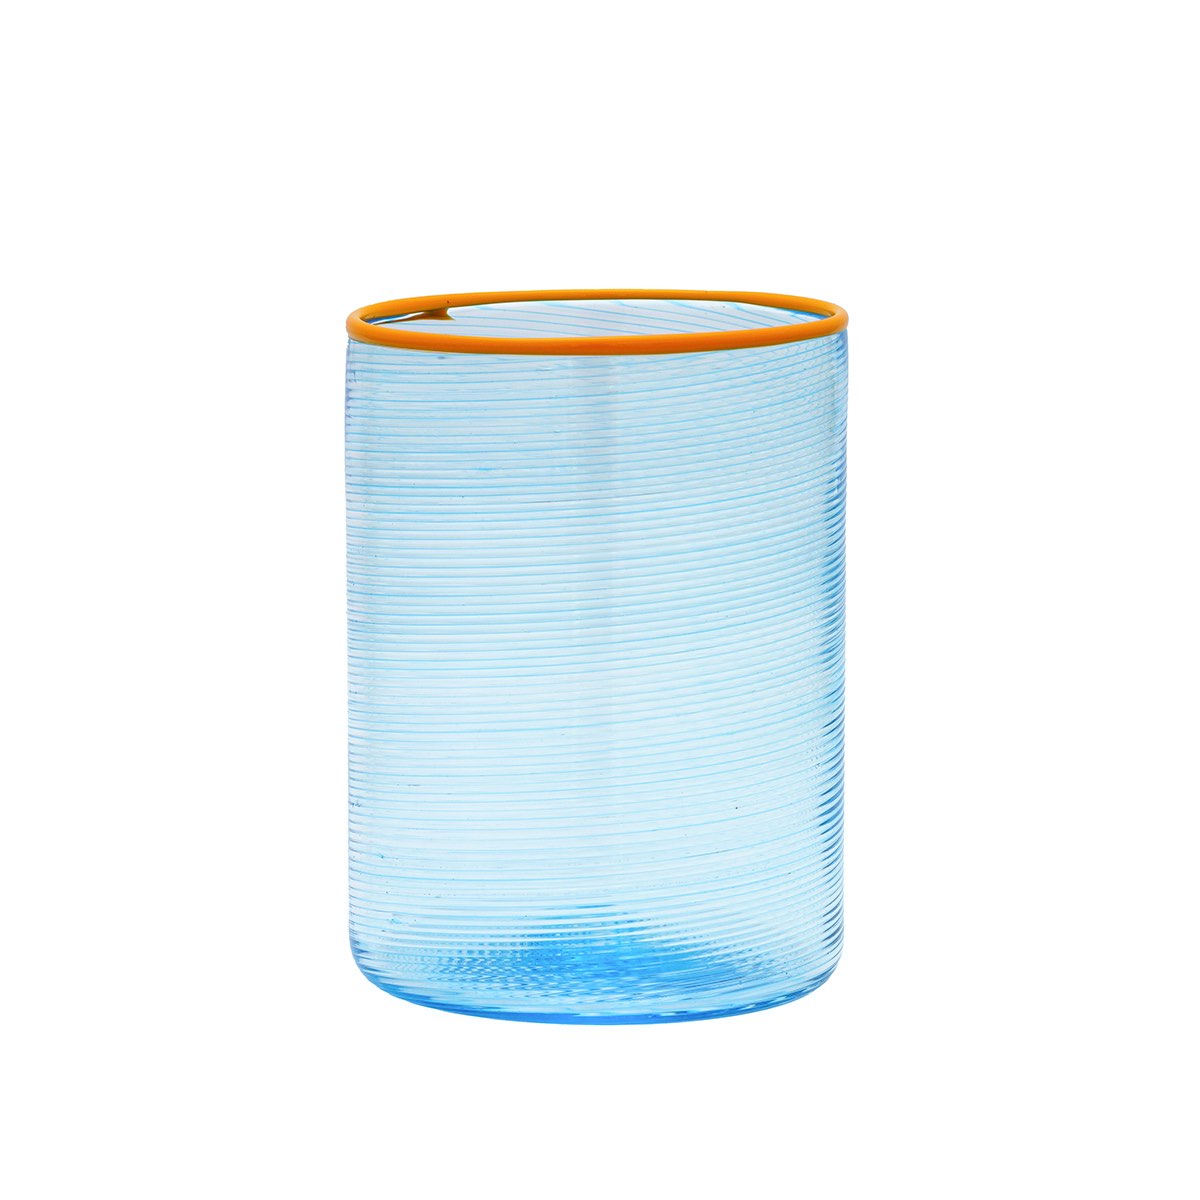 Fizzy acqua acquamare azzurro blue glass orange